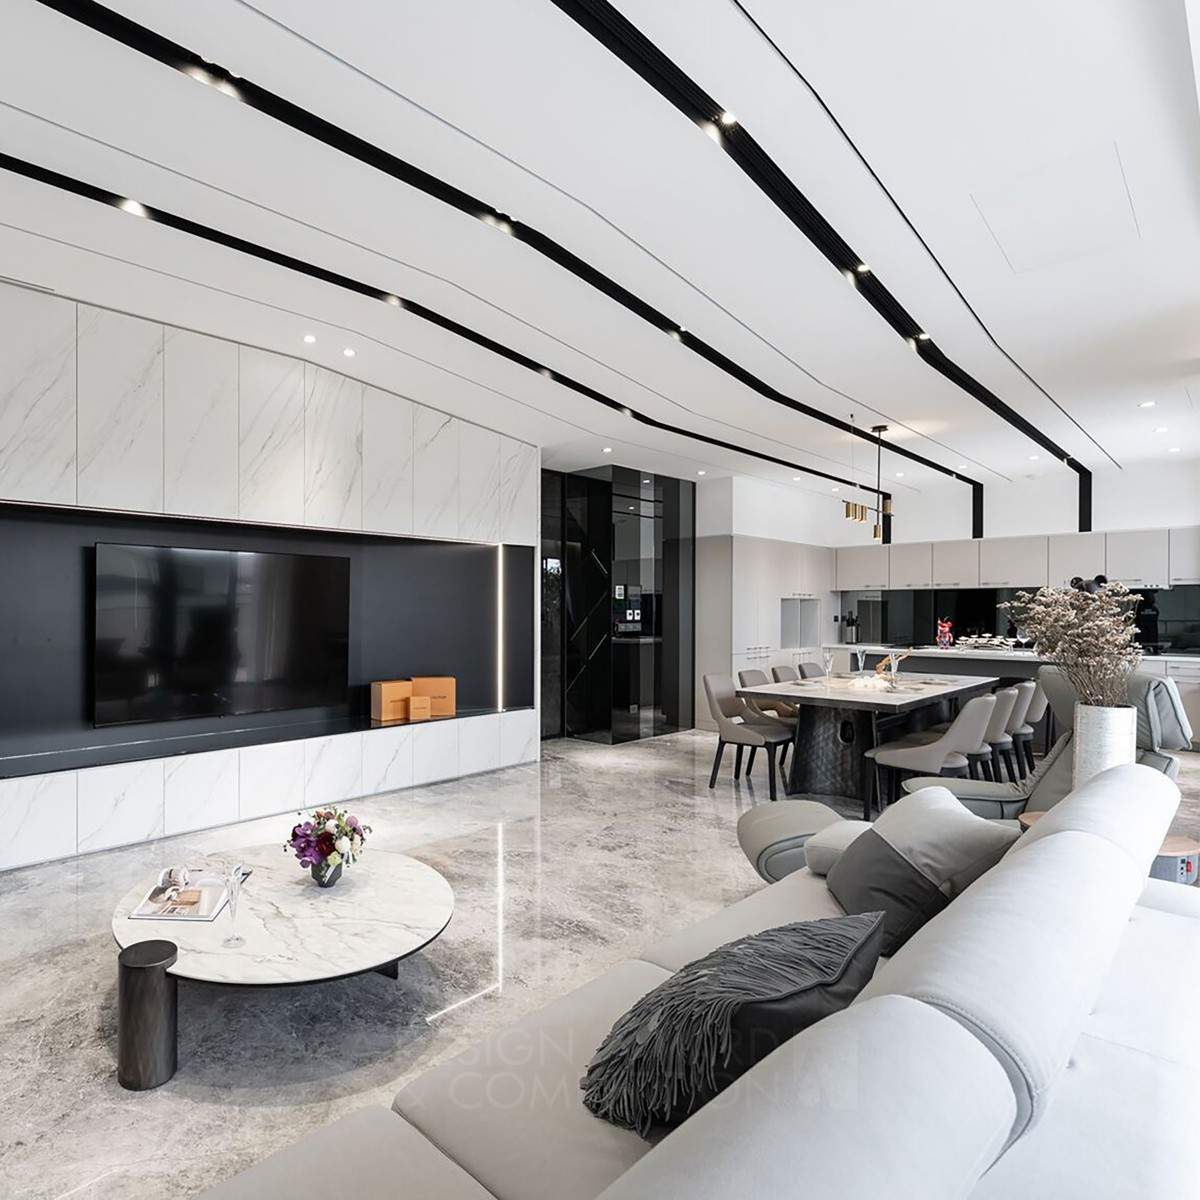 Fabio Su wins Bronze at the prestigious A' Interior Space, Retail and Exhibition Design Award with Villa 150 Guest House.